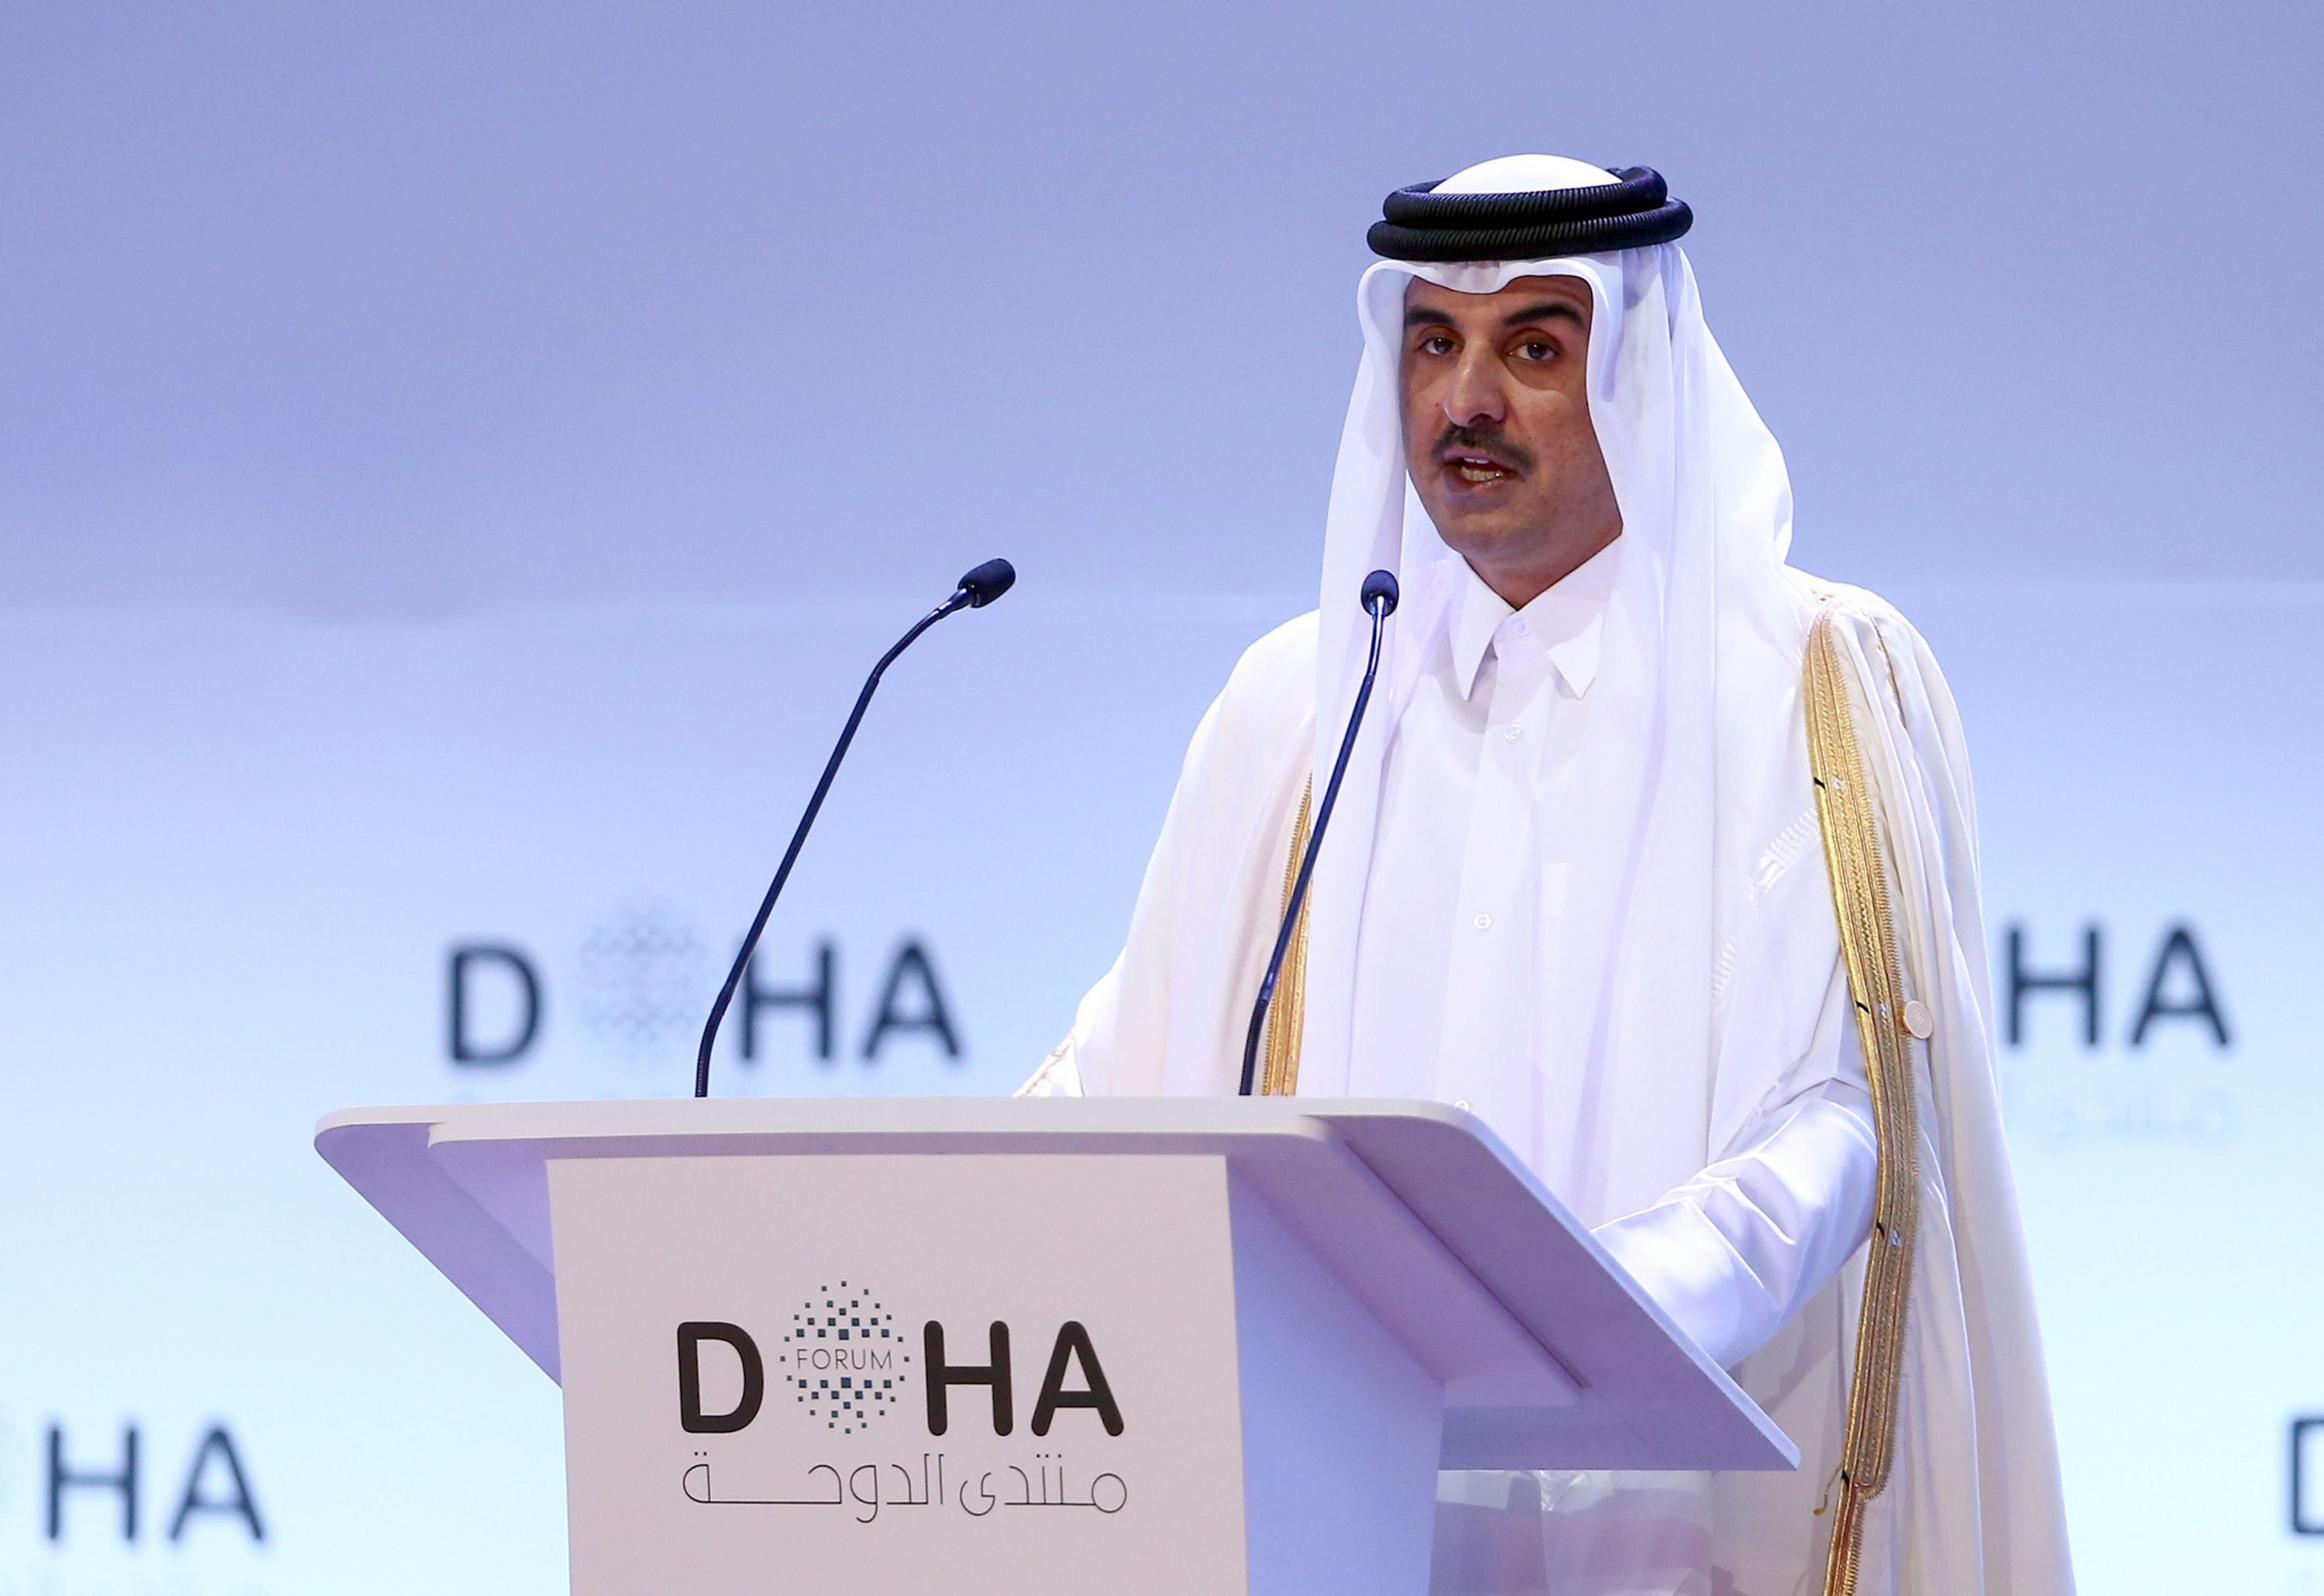 a speech about qatar